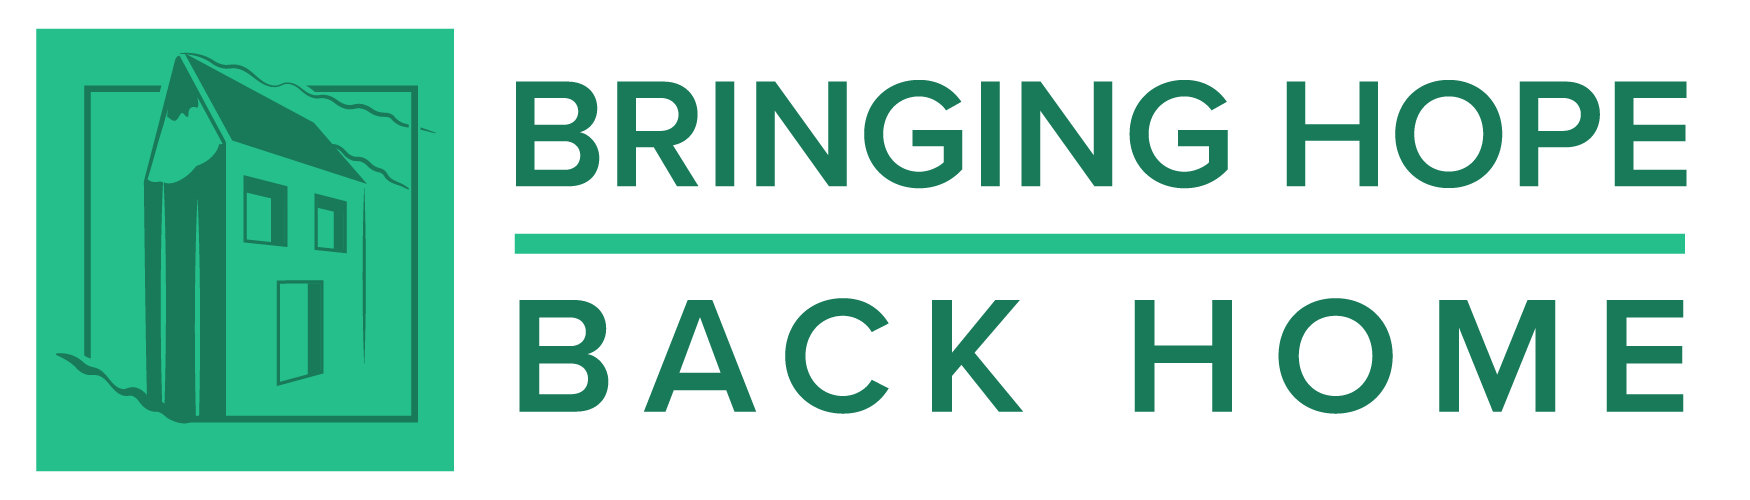 Bringing Hope Back Home logo